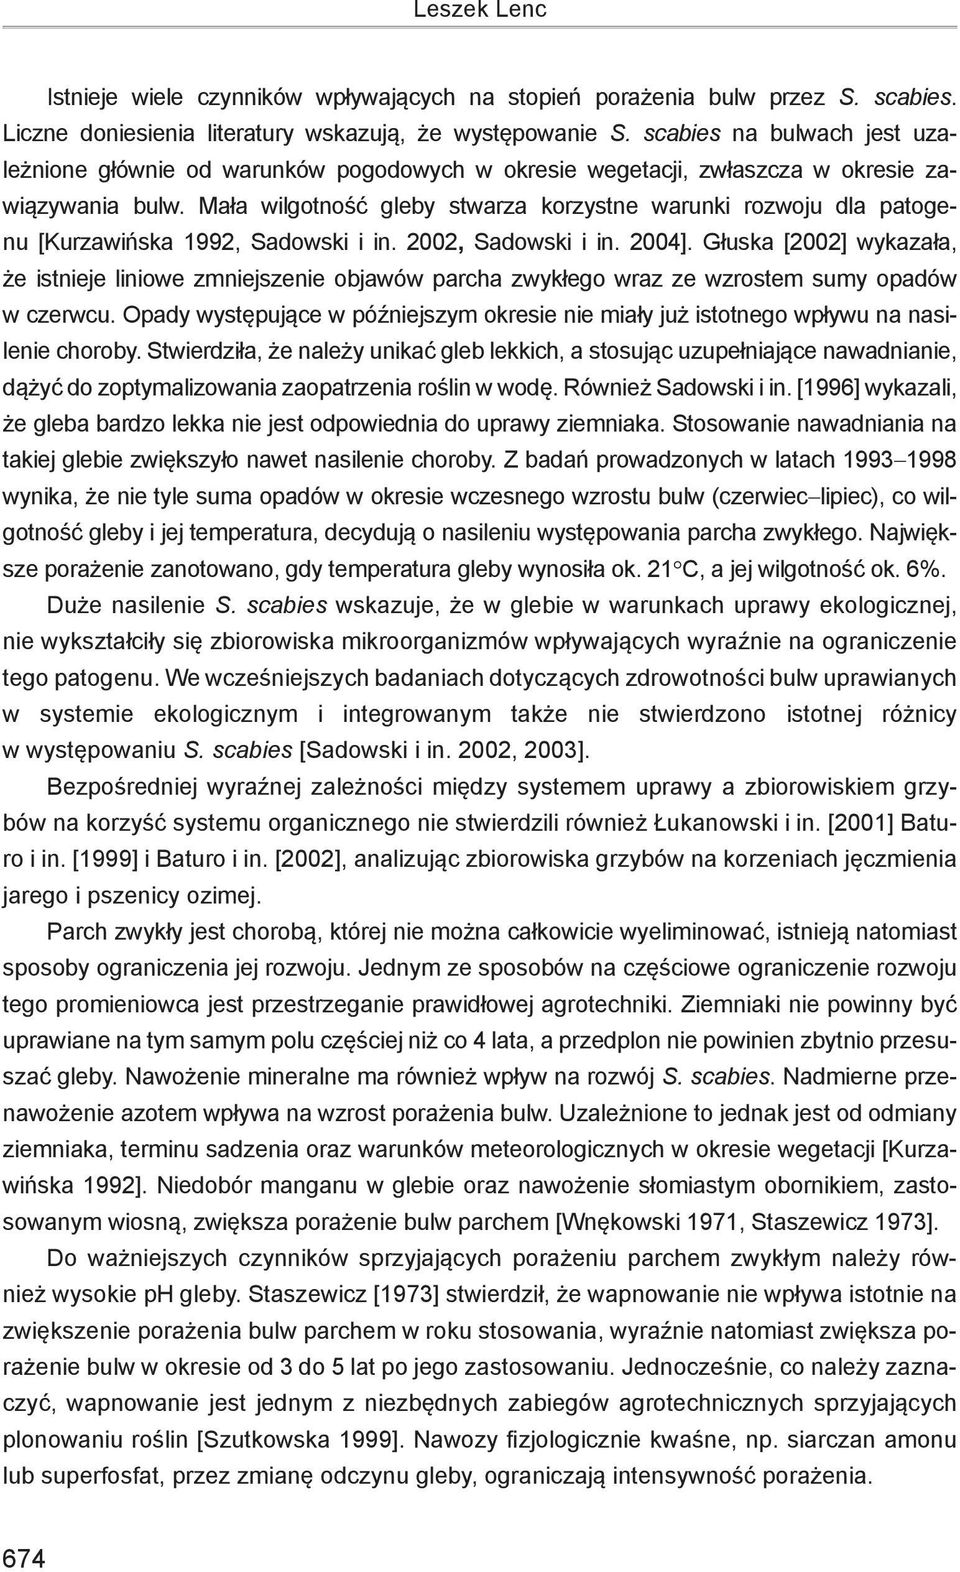 Mała wilgotność gleby stwarza korzystne warunki rozwoju dla patogenu [Kurzawińska 1992, Sadowski i in. 2002, Sadowski i in. 2004].